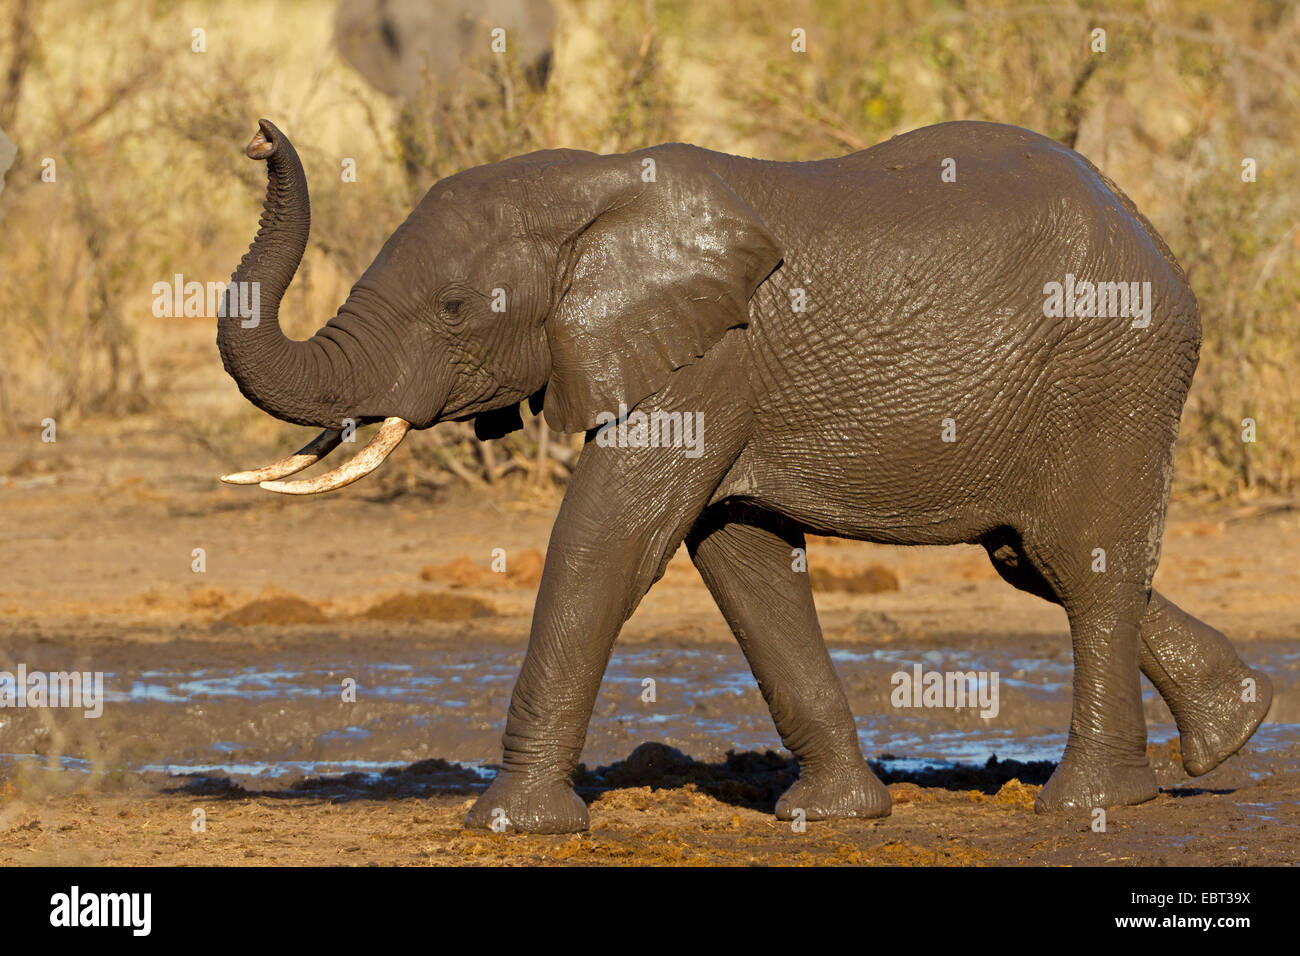 Elefante africano (Loxodonta africana), el elefante juvenil después del baño de barro, Sudáfrica, el Parque Nacional Krueger Foto de stock